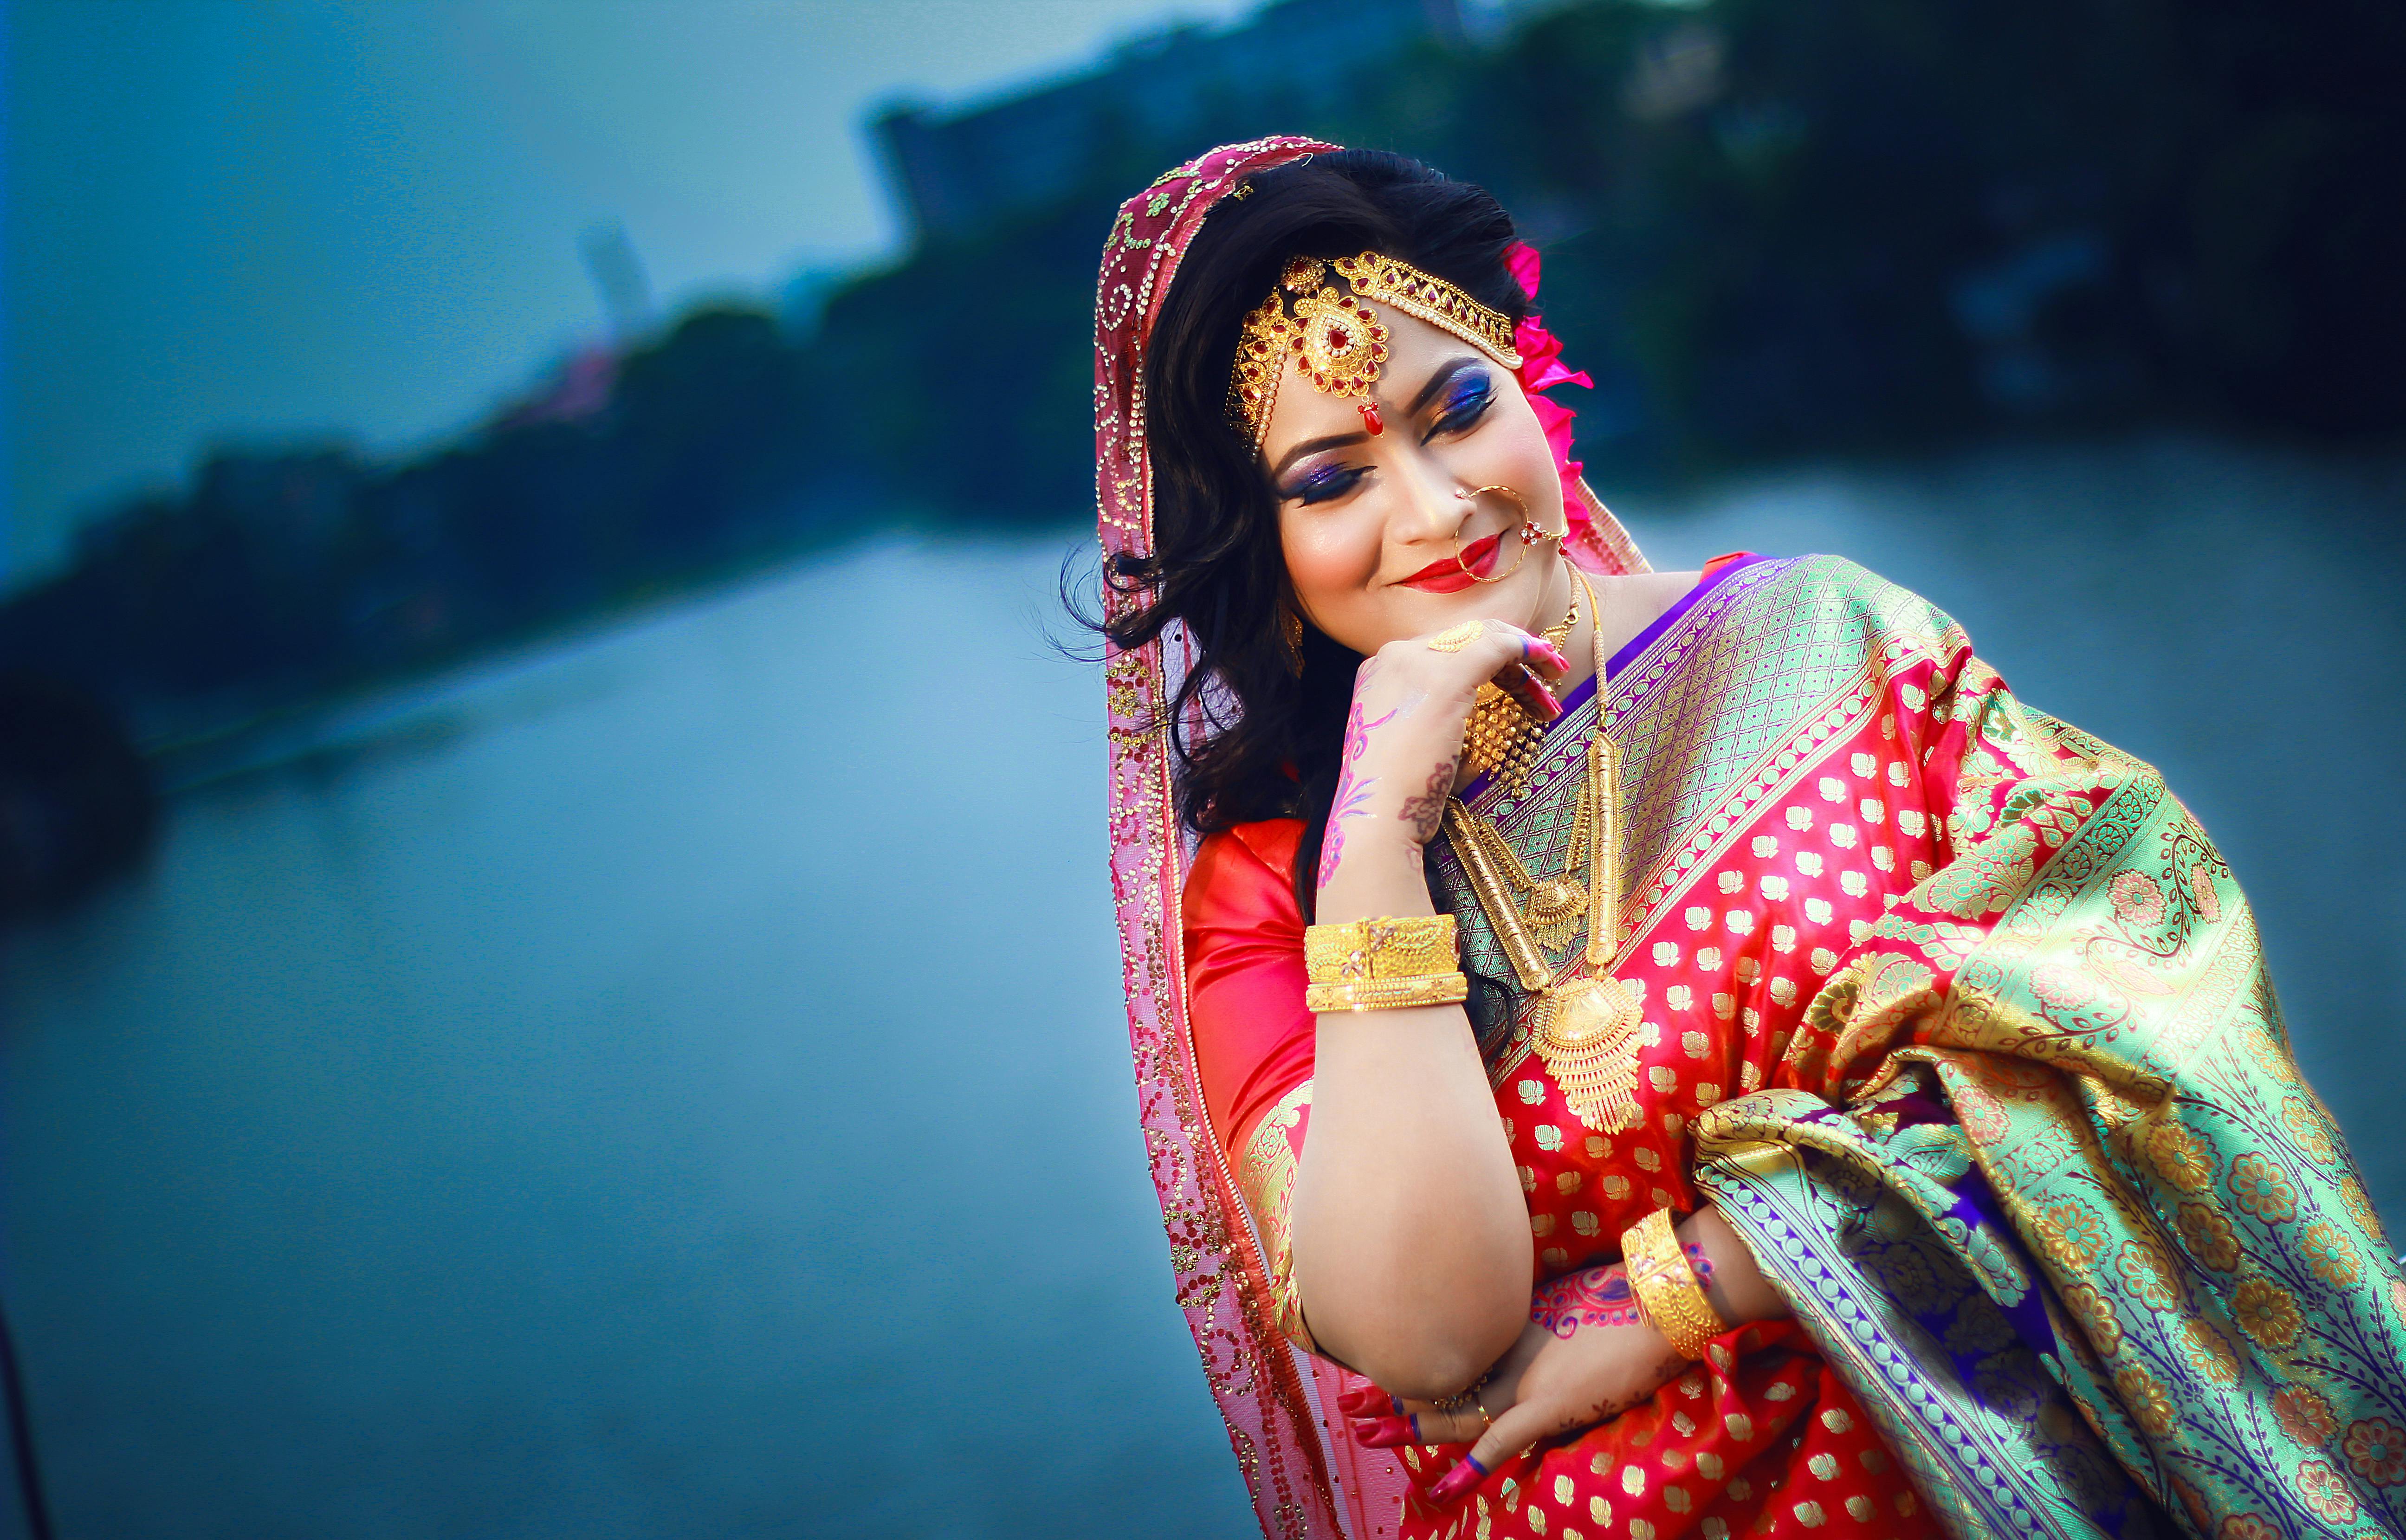 Bengali bridal photoshoot (pose ideas)✨